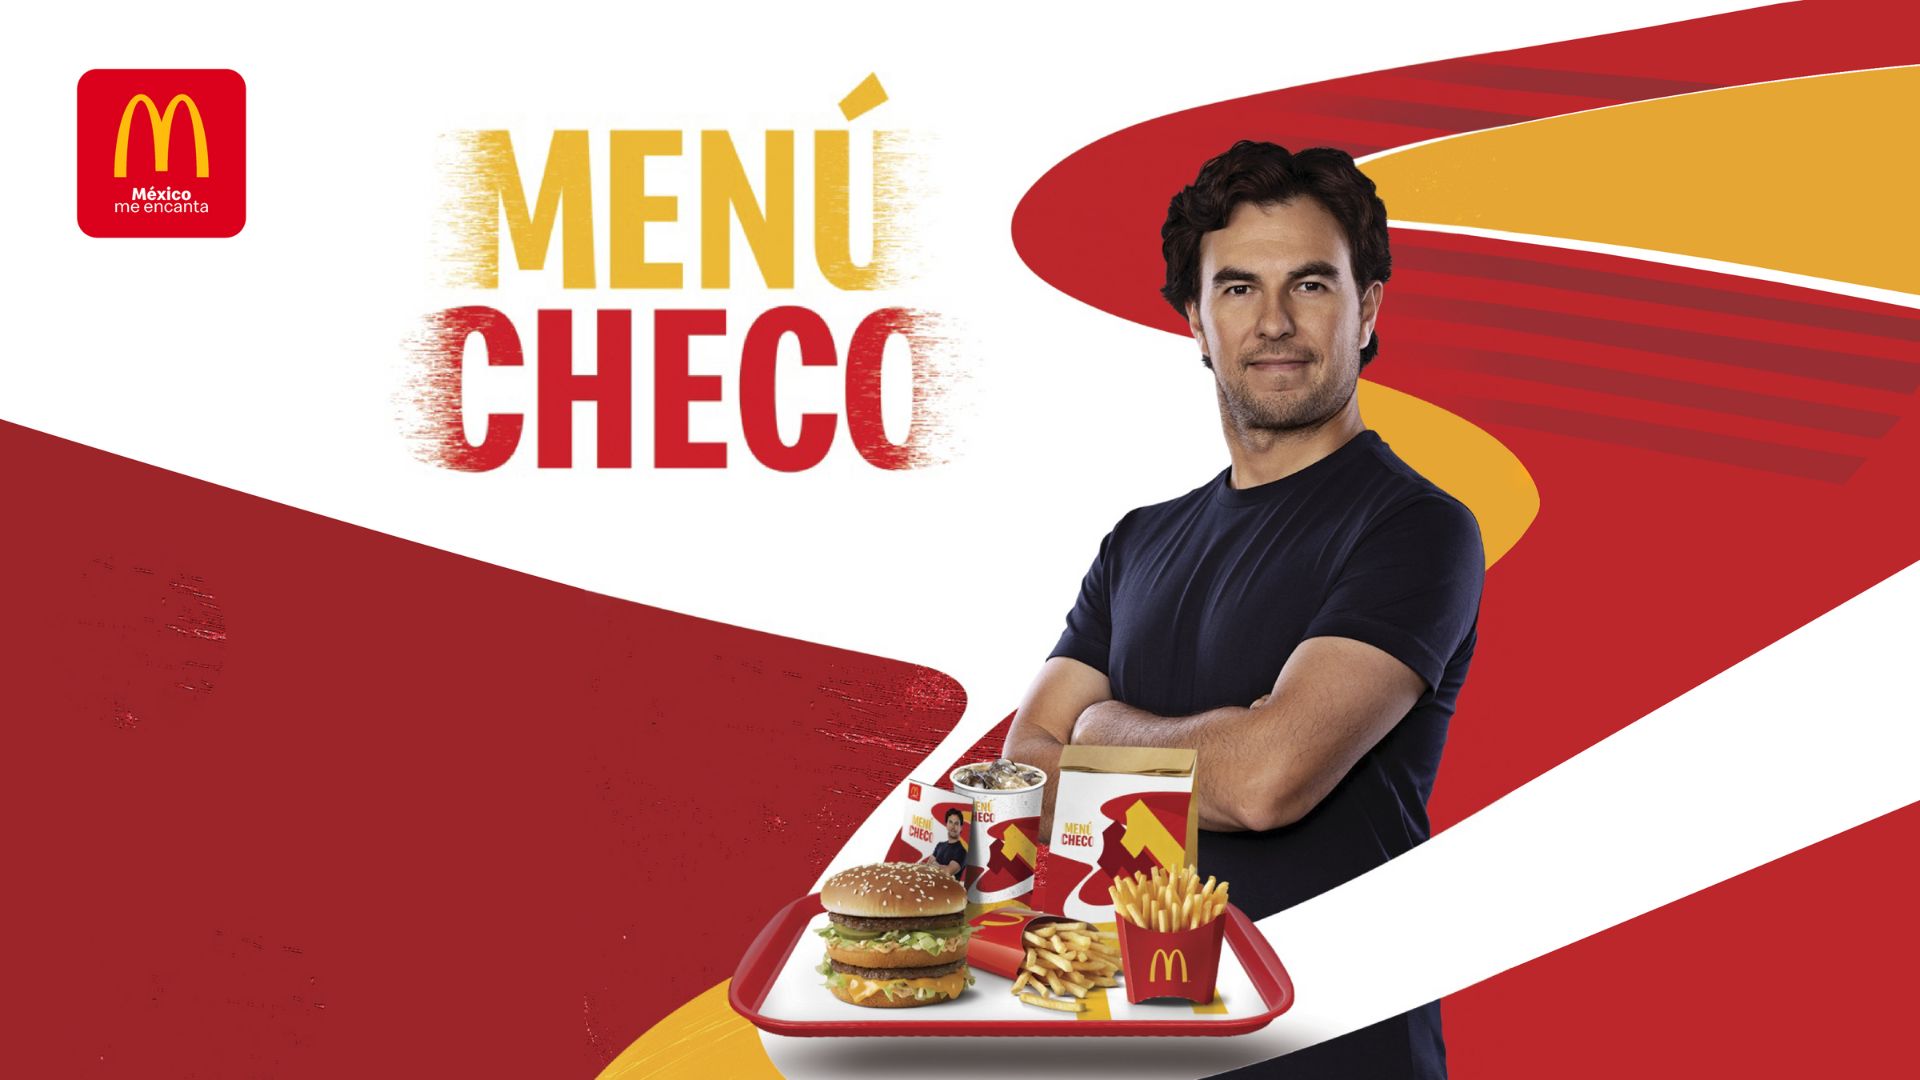 [México] McDonald’s presenta el menú favorito de Checo Pérez